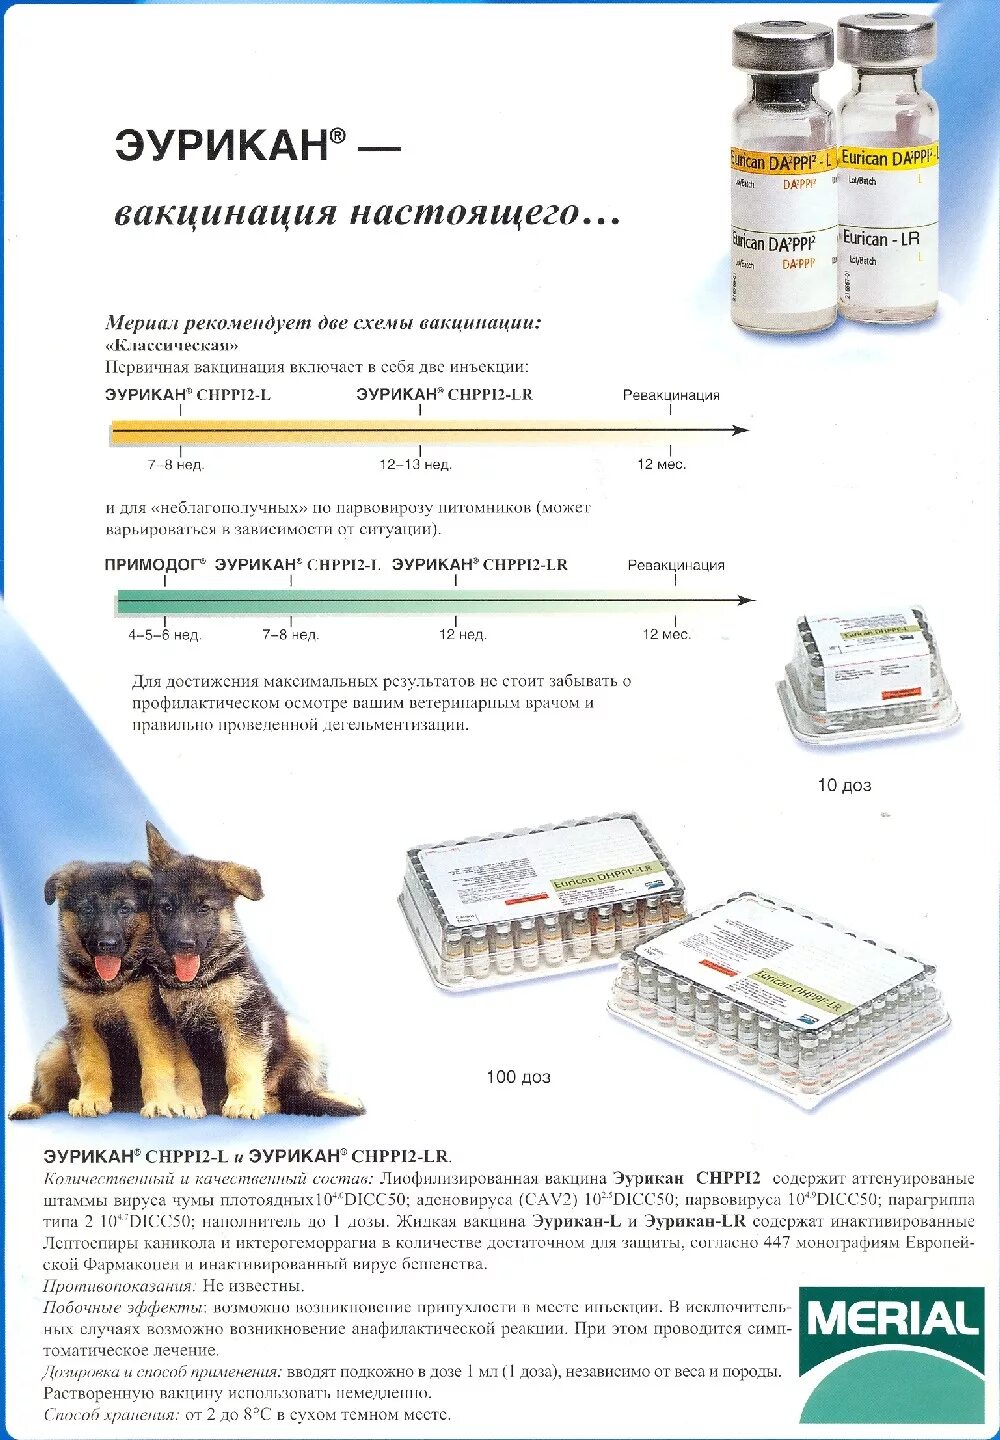 Сколько надо прививок собаке. Эурикан dhppi2 l схема вакцинации. Схема вакцинации эуриканом собак. Схема вакцинации Эурикан для собак. Эурикан схема вакцинации щенков.